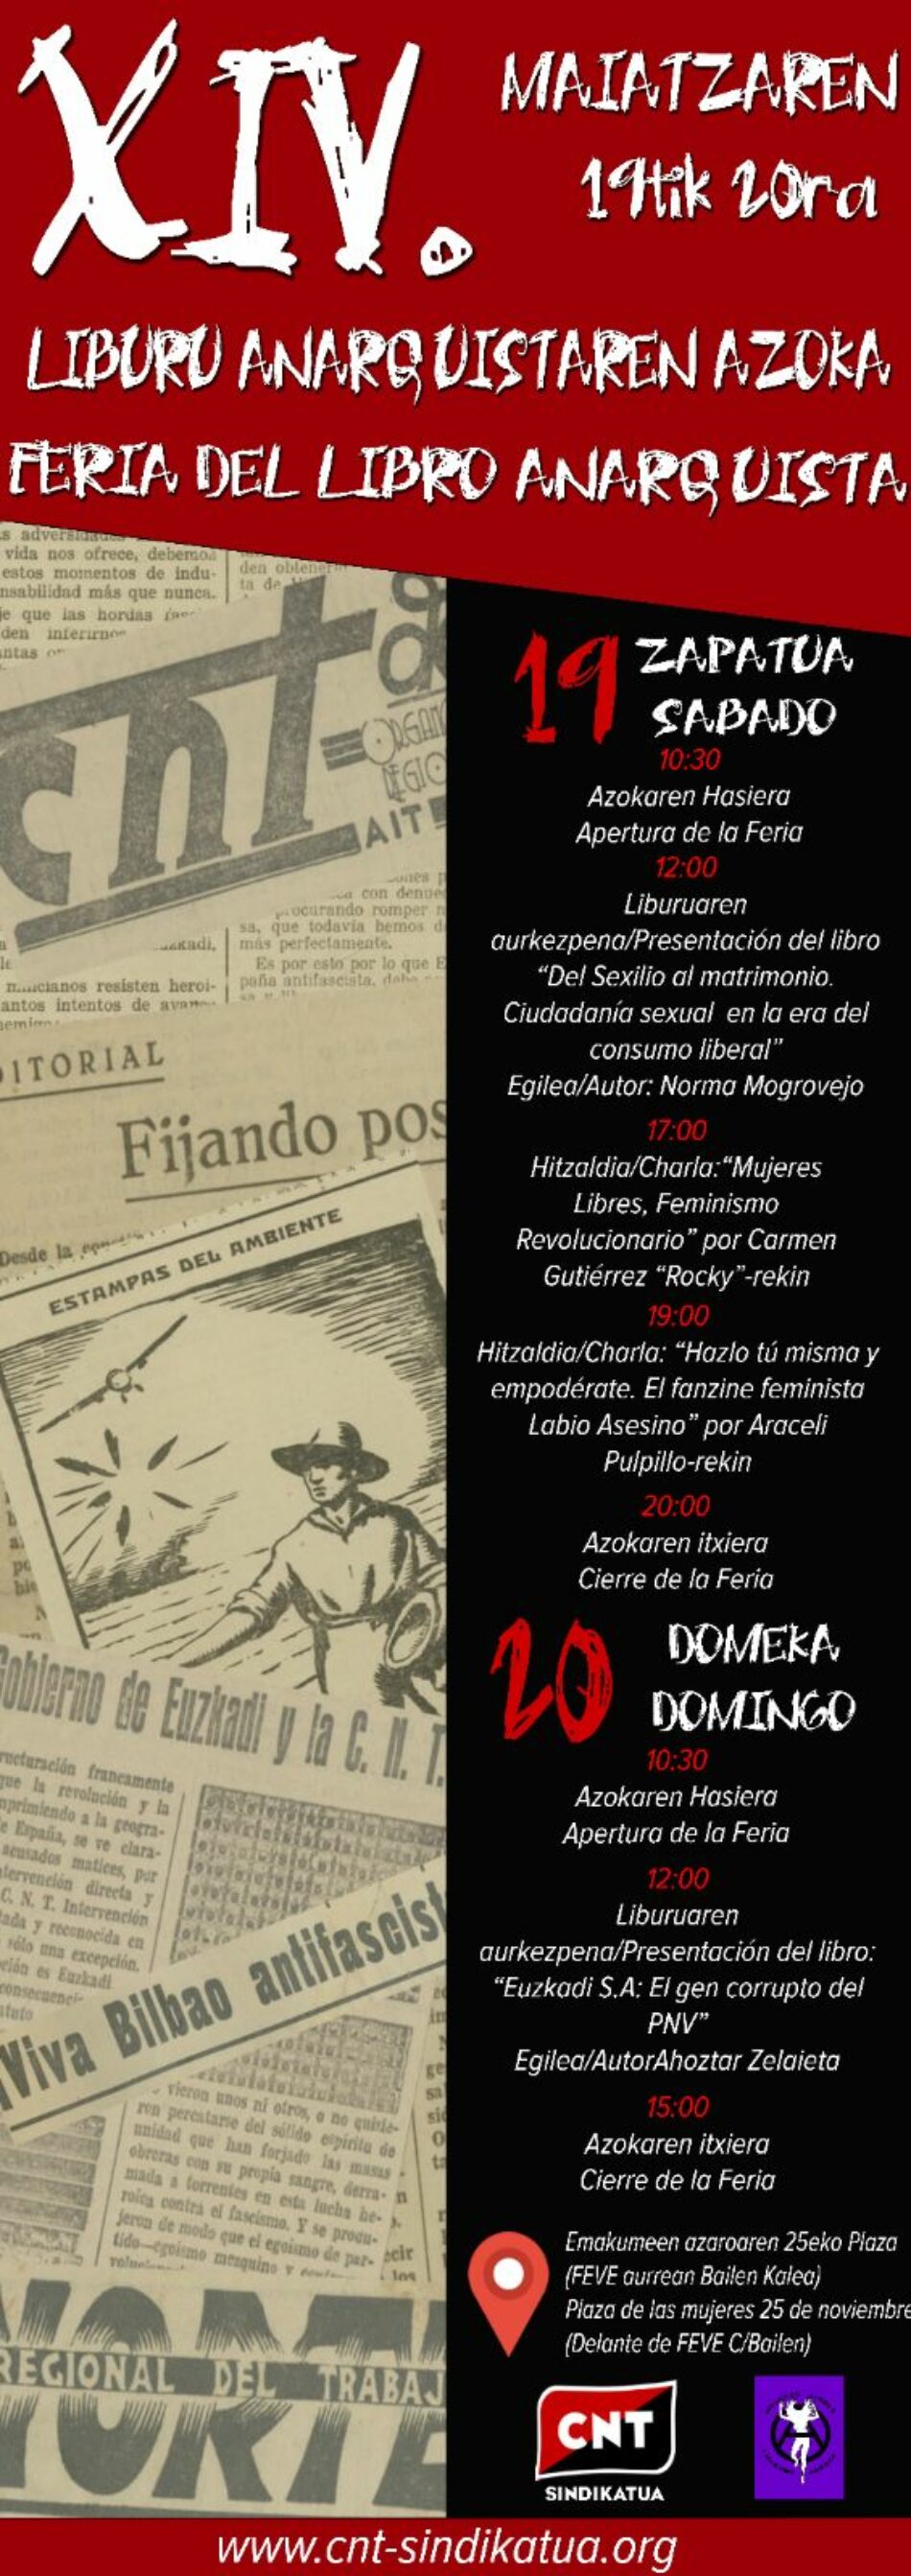 19 y 20 de mayo, Feria del Libro Anarquista en Bilbao